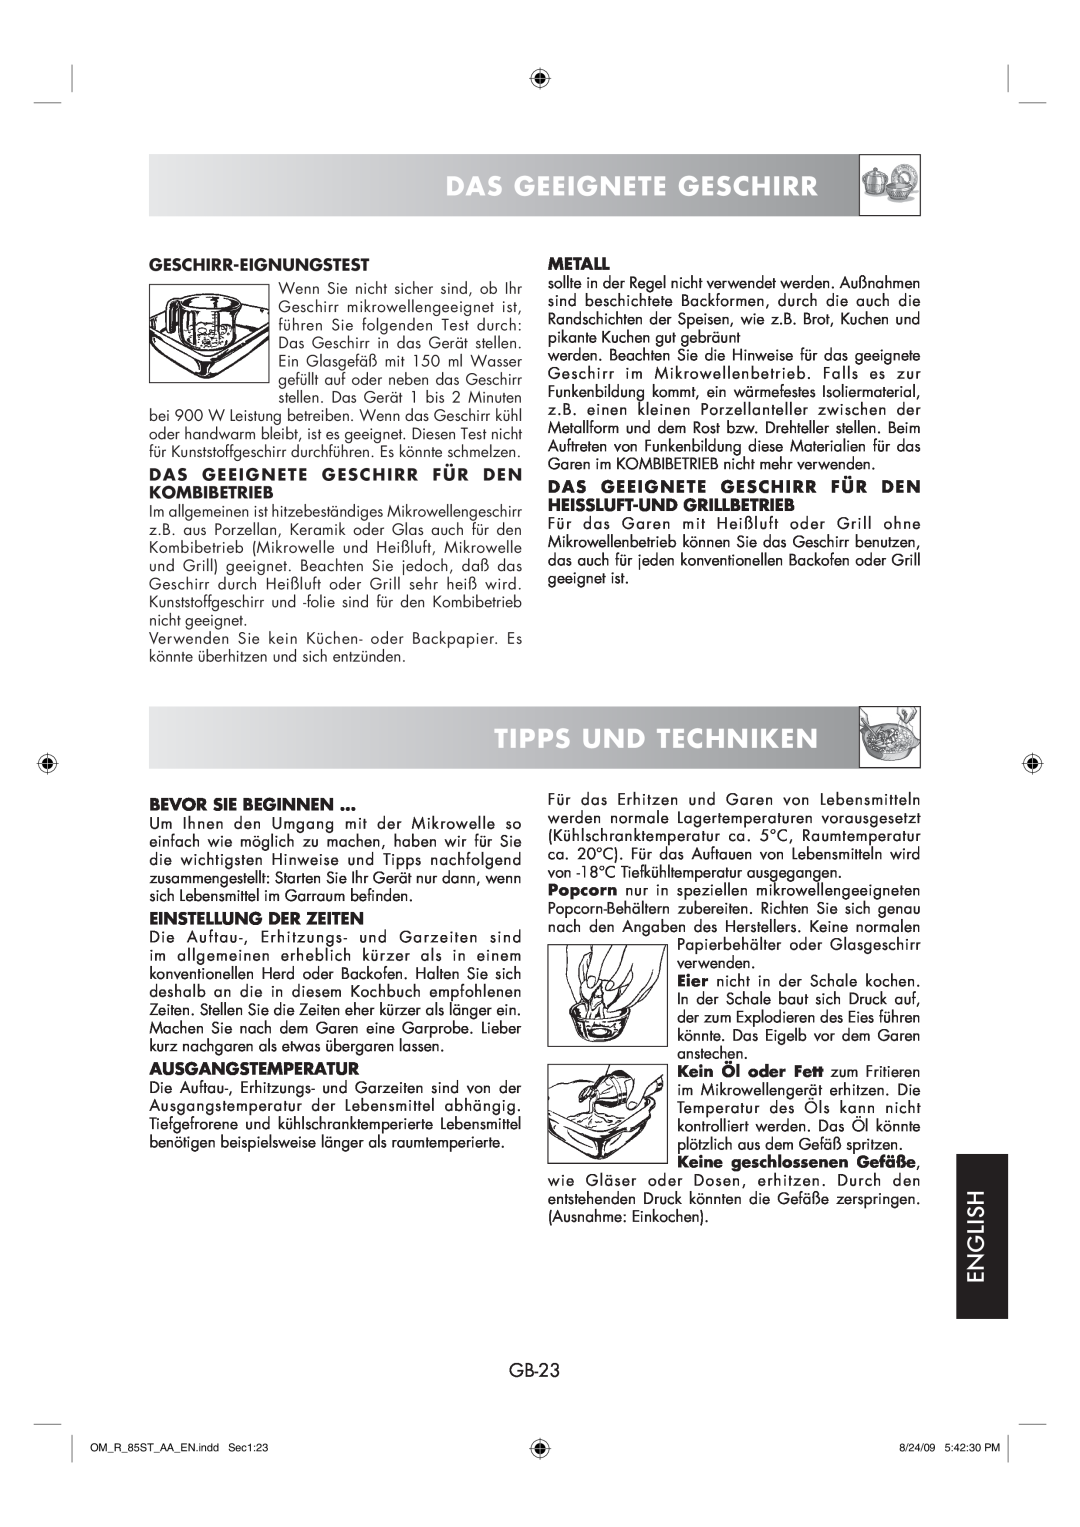 Sharp R-85ST-AA operation manual Tipps Und Techniken, Das Geeignete Geschirr, English, GB-23 